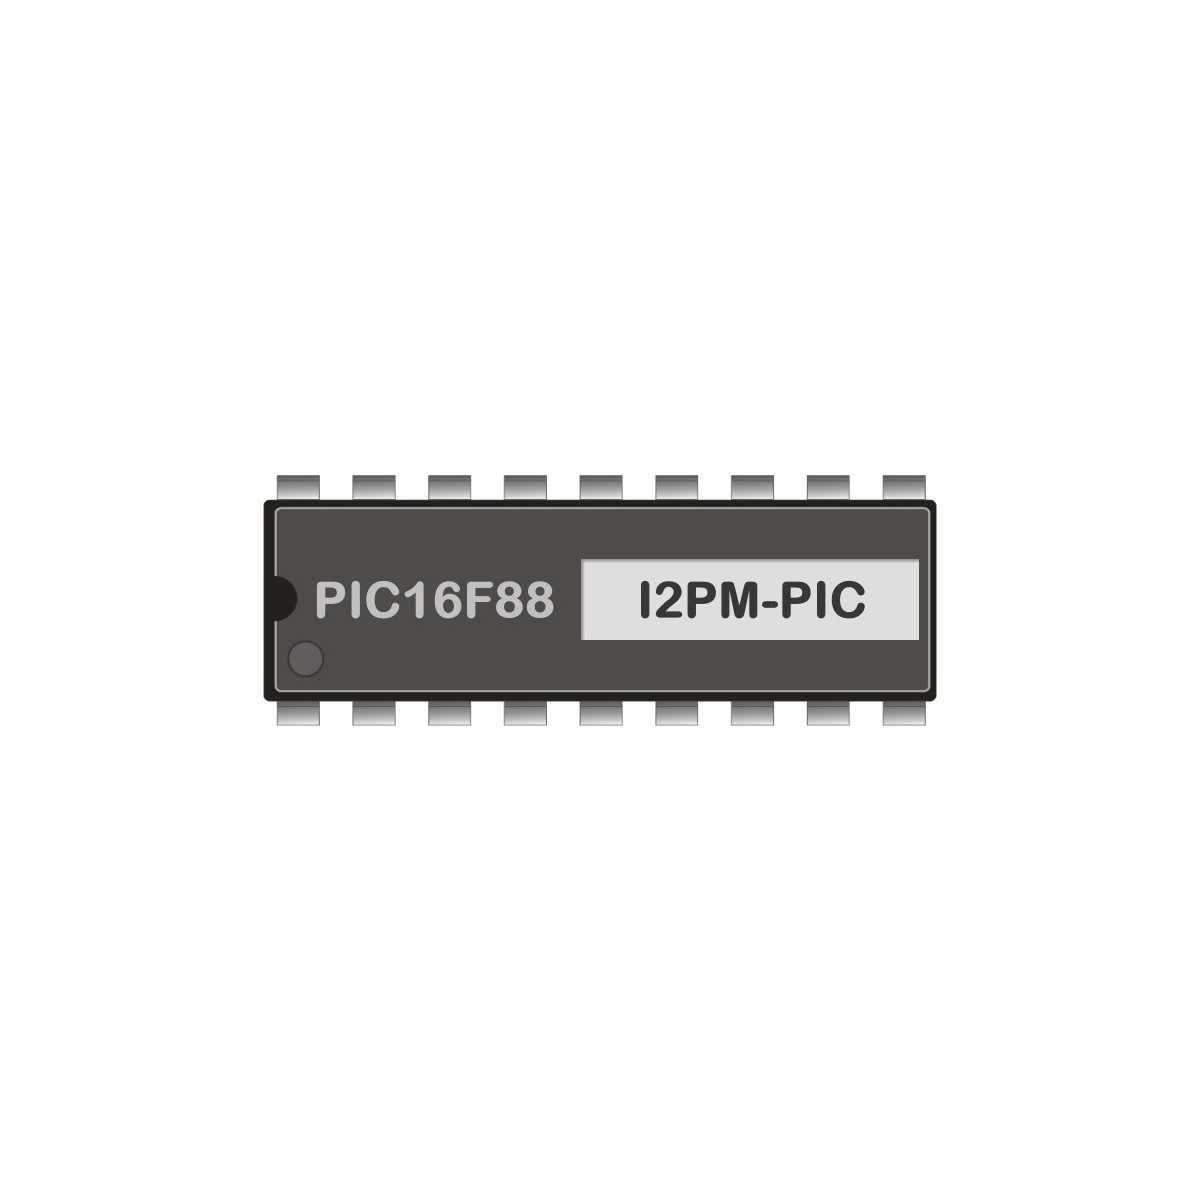 PIC16F88 programmiert für I2C-RS232-Modem 1